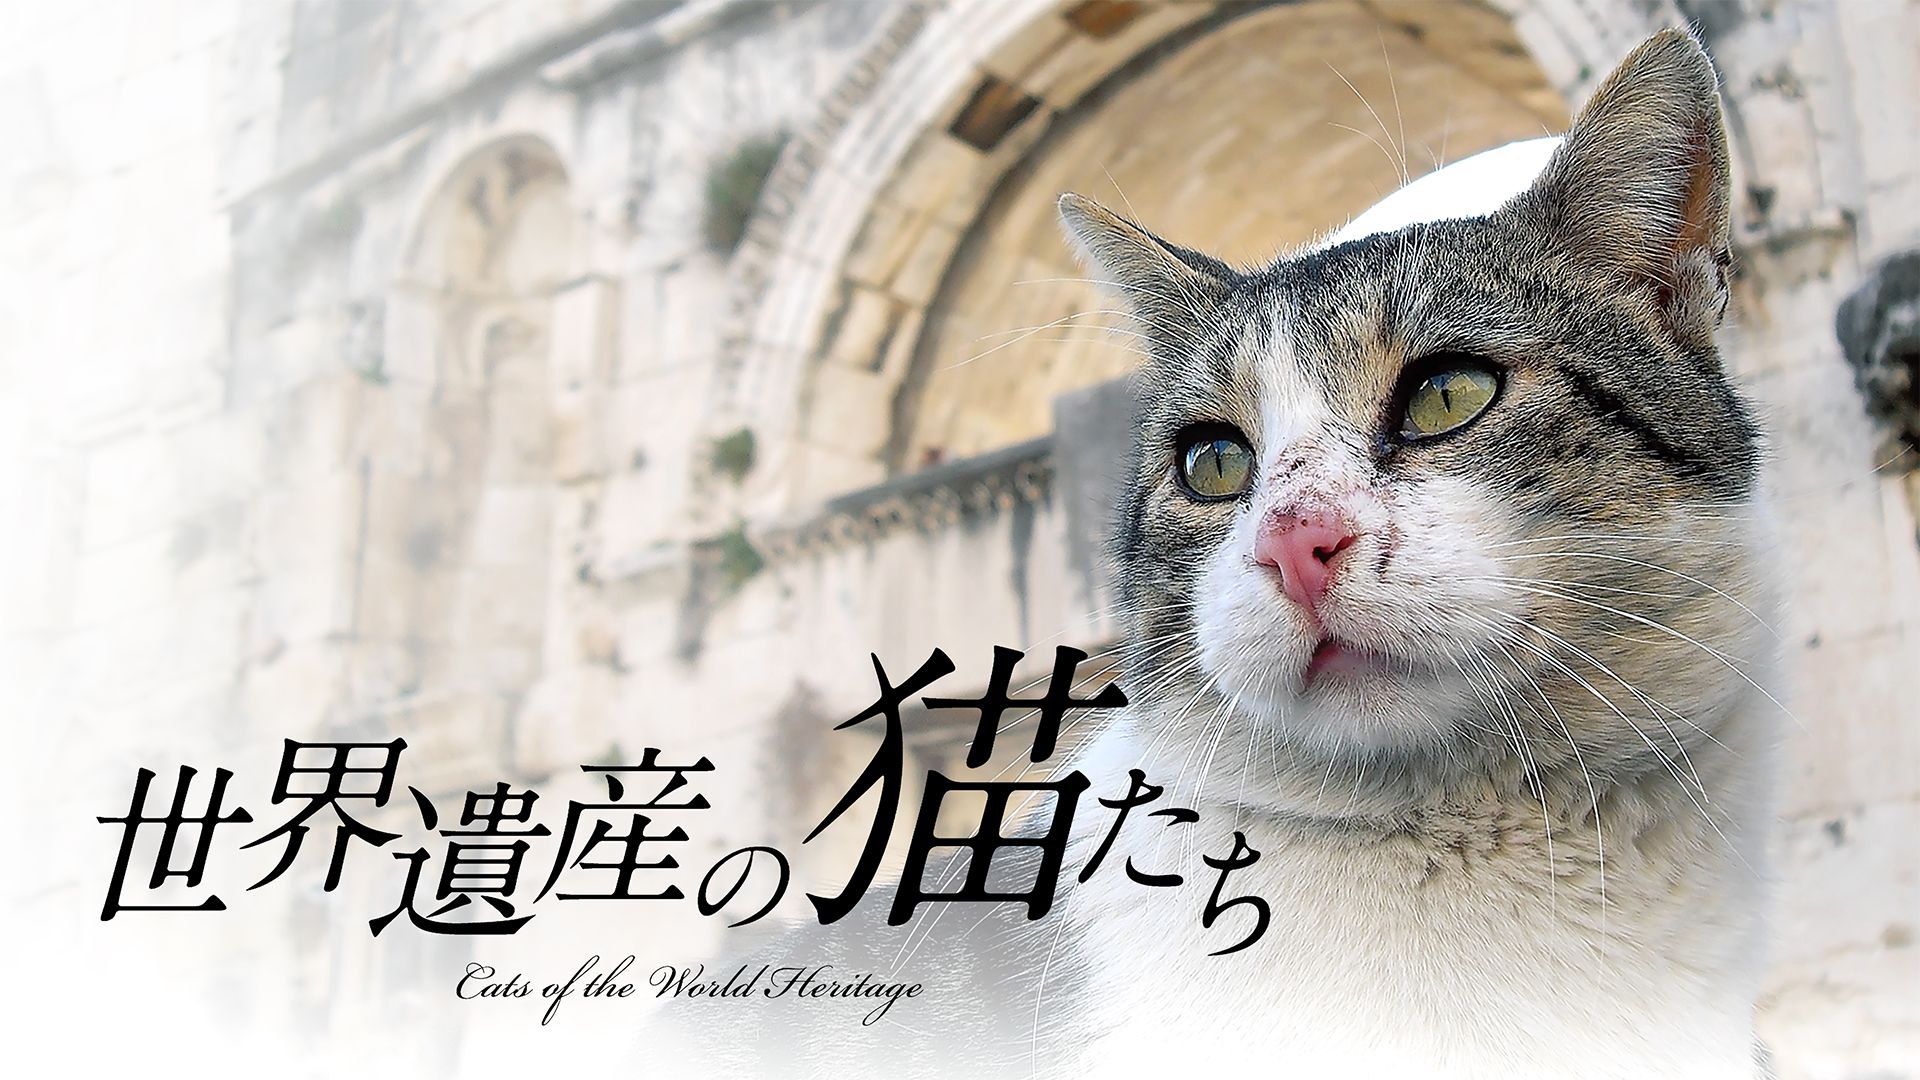 世界遺産の猫たち Cats of the World Heritage